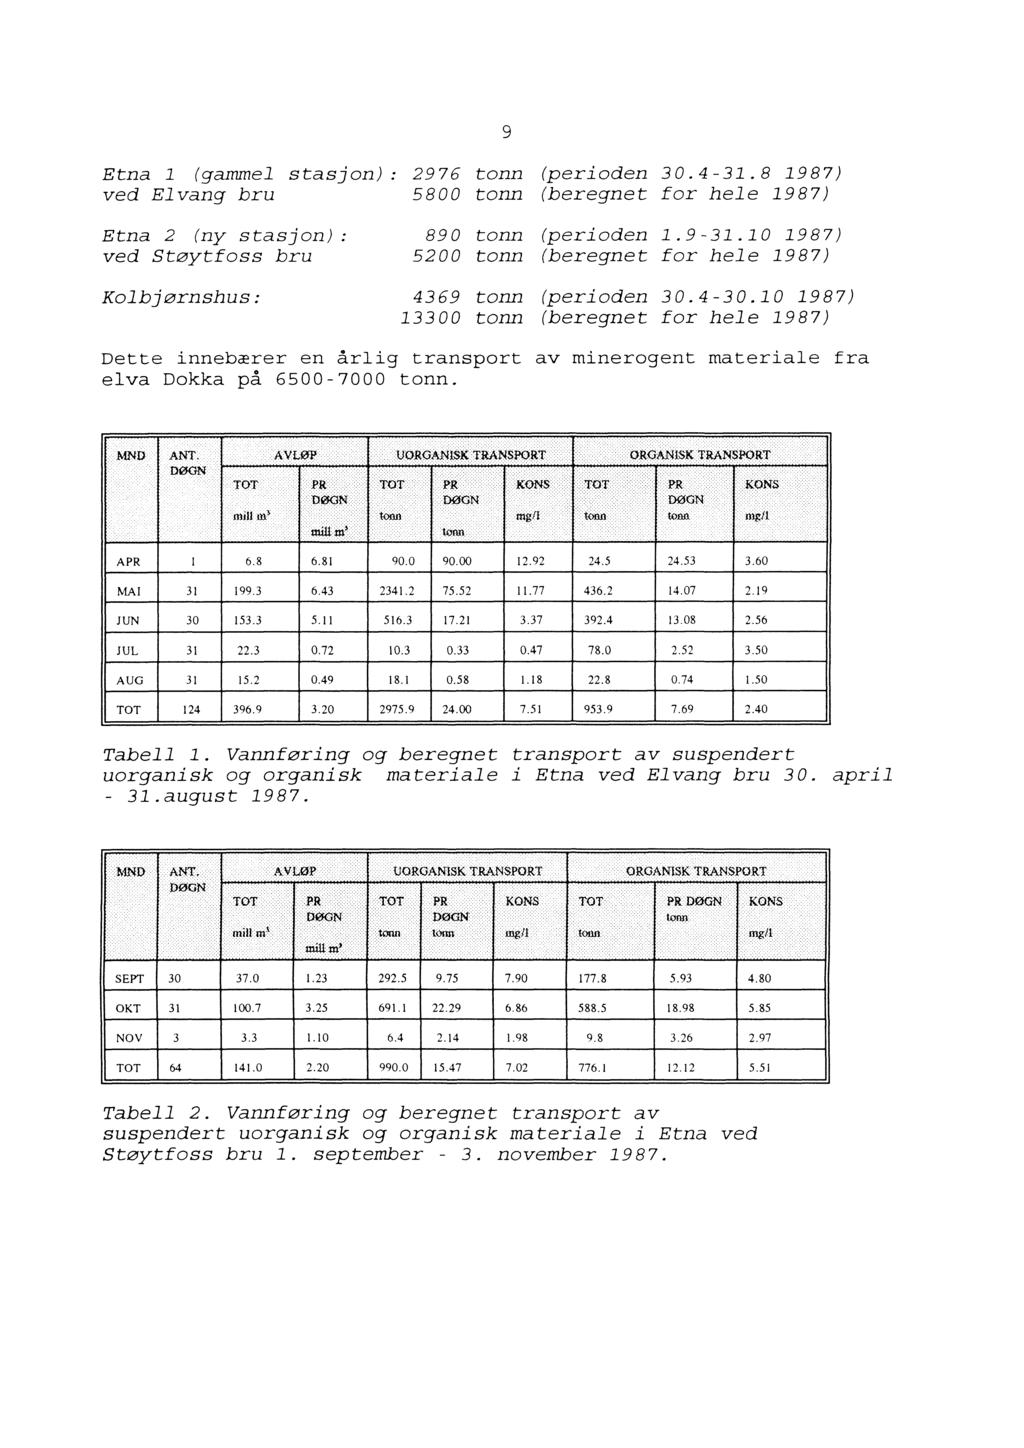 Etna l (gammel stasjon) 2976 tonn (perioden 30.4-31.8 1987) ved Elvang bru 5800 tonn (beregnet for hele 1987) Etna 2 (ny stasjon) 890 tonn (perioden 1.9-31.